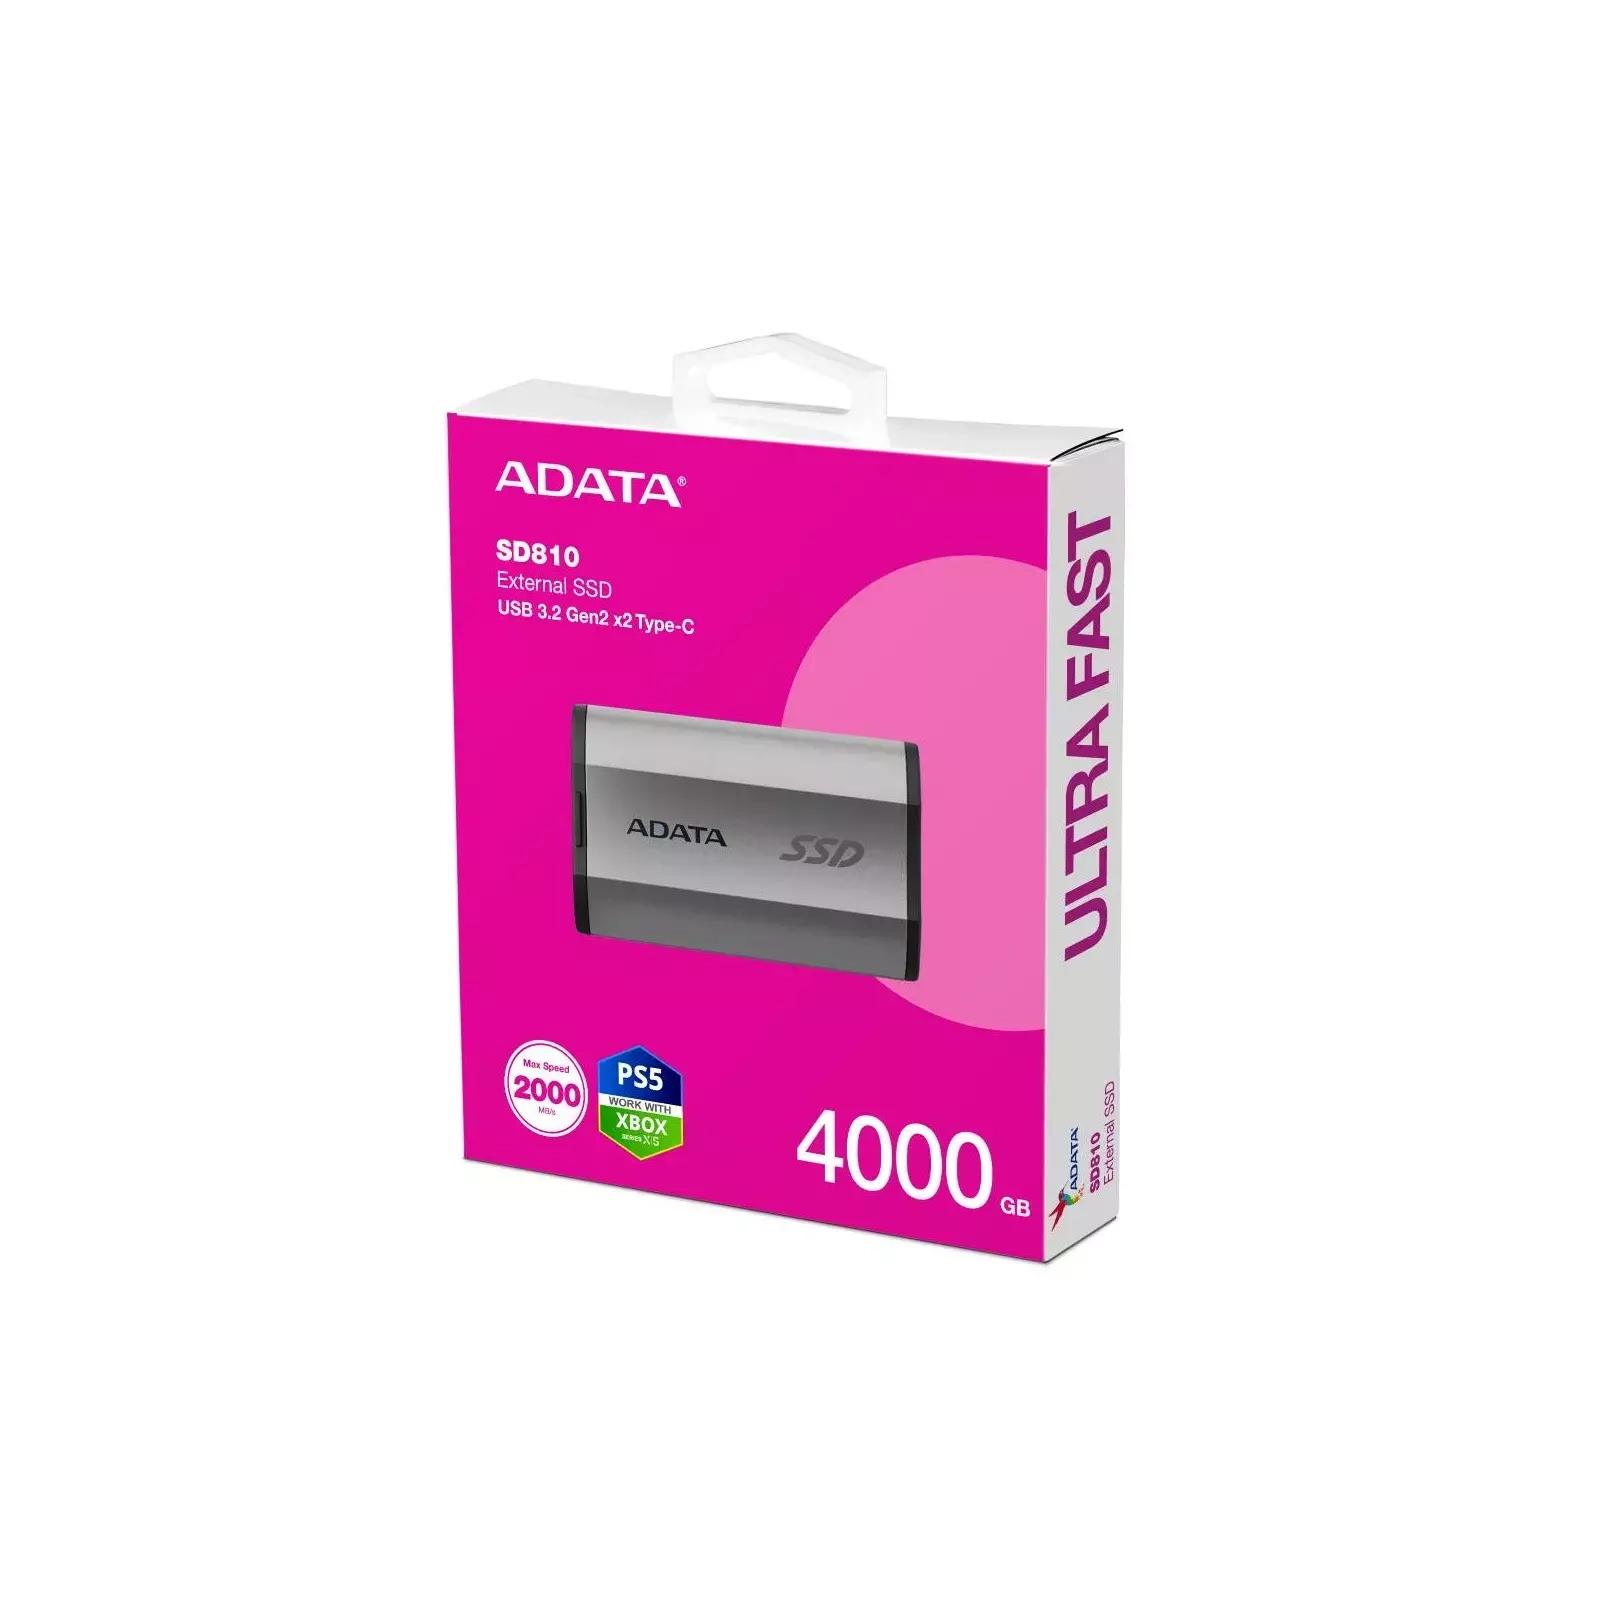 Внешний SSD диск ADATA External SSD SD810, 4000GB, Silver (SD810-4000G-CSG)